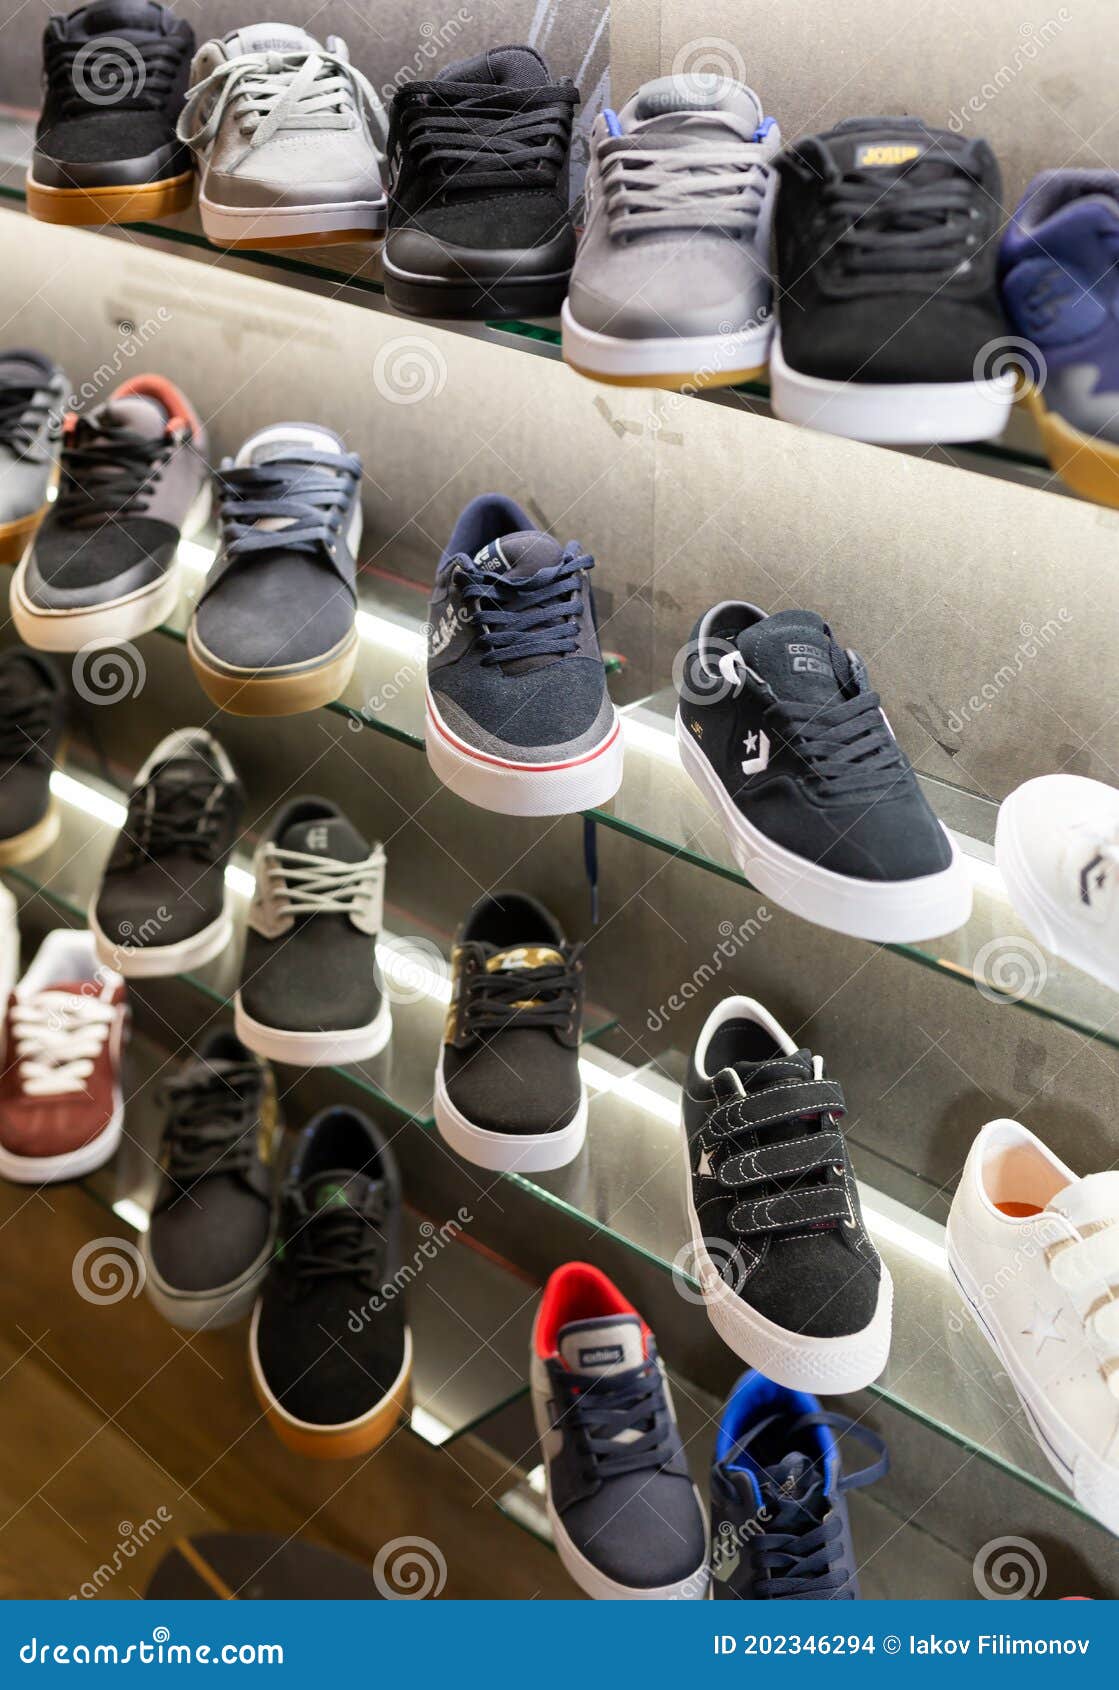 Estanterías Con Deportivos La Tienda De Zapatos Imagen de archivo editorial - Imagen de ropa, 202346294